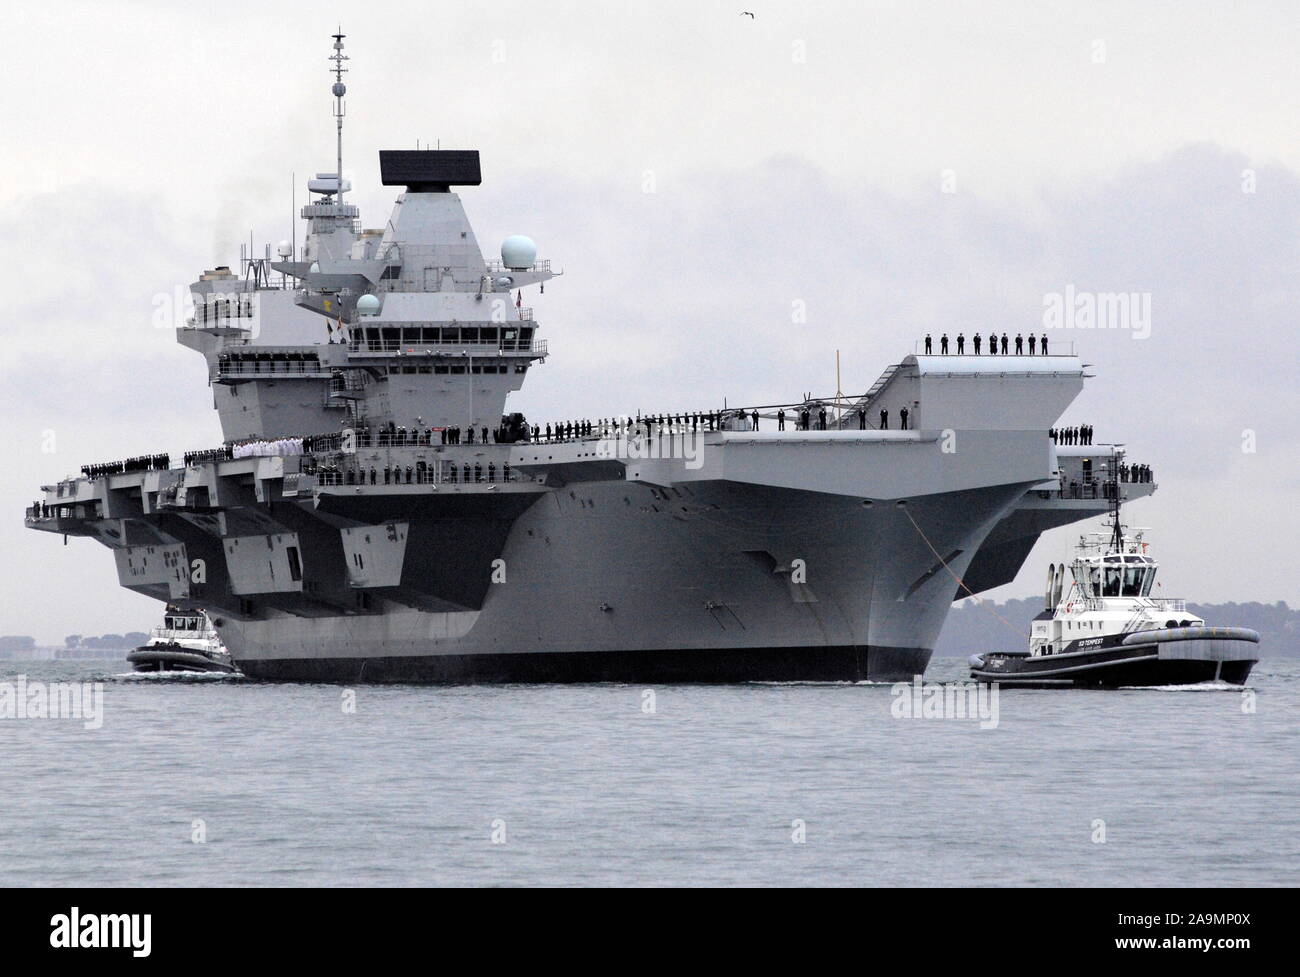 AJAXNETPHOTO. 16e Août, 2017. PORTSMOUTH, Angleterre. - Le PLUS GRAND NAVIRE DE LA ROYAL NAVY NAVIGUE DANS LE PORT D'ACCUEIL - HMS REINE ELIZABTH, LE PREMIER DES DEUX 65 000 tonnes, 900 mètres de long, l'ÉTAT DE L'ART PORTE-AVIONS NAVIGUÉ DANS LA BASE NAVALE DE PORTSMOUTH DANS LES PREMIÈRES HEURES DE CE MATIN, doucement poussé et poussé PAR SIX REMORQUEURS DANS SON NOUVEAU POSTE À QUAI SUR Princesse royale jetée. Les £3BN TRANSPORTEUR, LE PLUS GRAND NAVIRE JAMAIS CONSTRUIT POUR LA MARINE ROYALE, EST ARRIVÉ À L'ARRIVÉE À SON PORT D'ATTACHE AVEC DEUX JOURS D'AVANCE SUR SON CALENDRIER INITIAL. PHOTO : JONATHAN EASTLAND/AJAX REF : D171608 6779 Banque D'Images